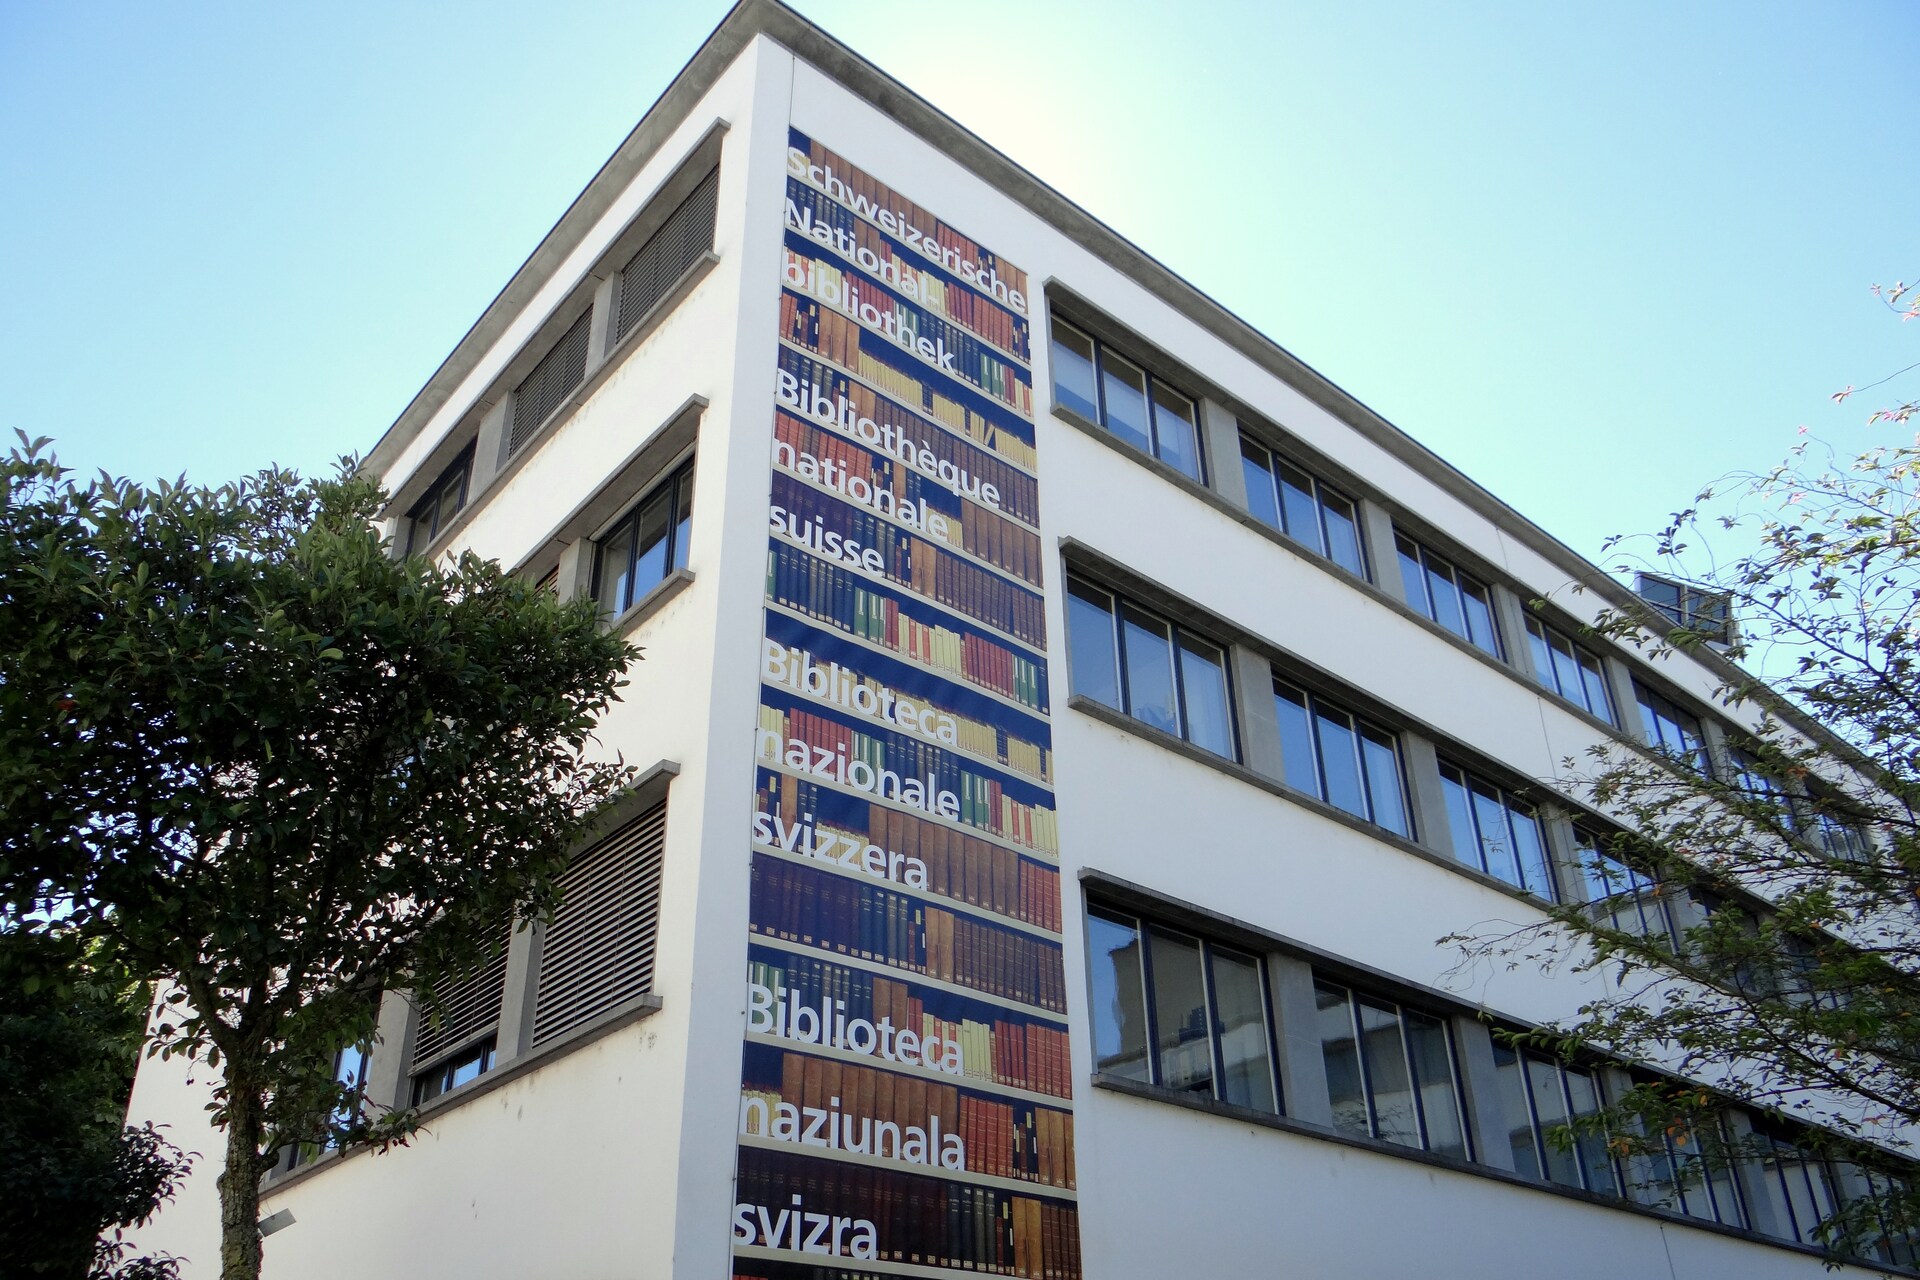 Biblioteca Nazionale Svizzera: la BN colleziona gli Helvetica, ossia testi, immagini e documenti sonori inerenti la Svizzera, conservando così a Berna la memoria collettiva del Paese